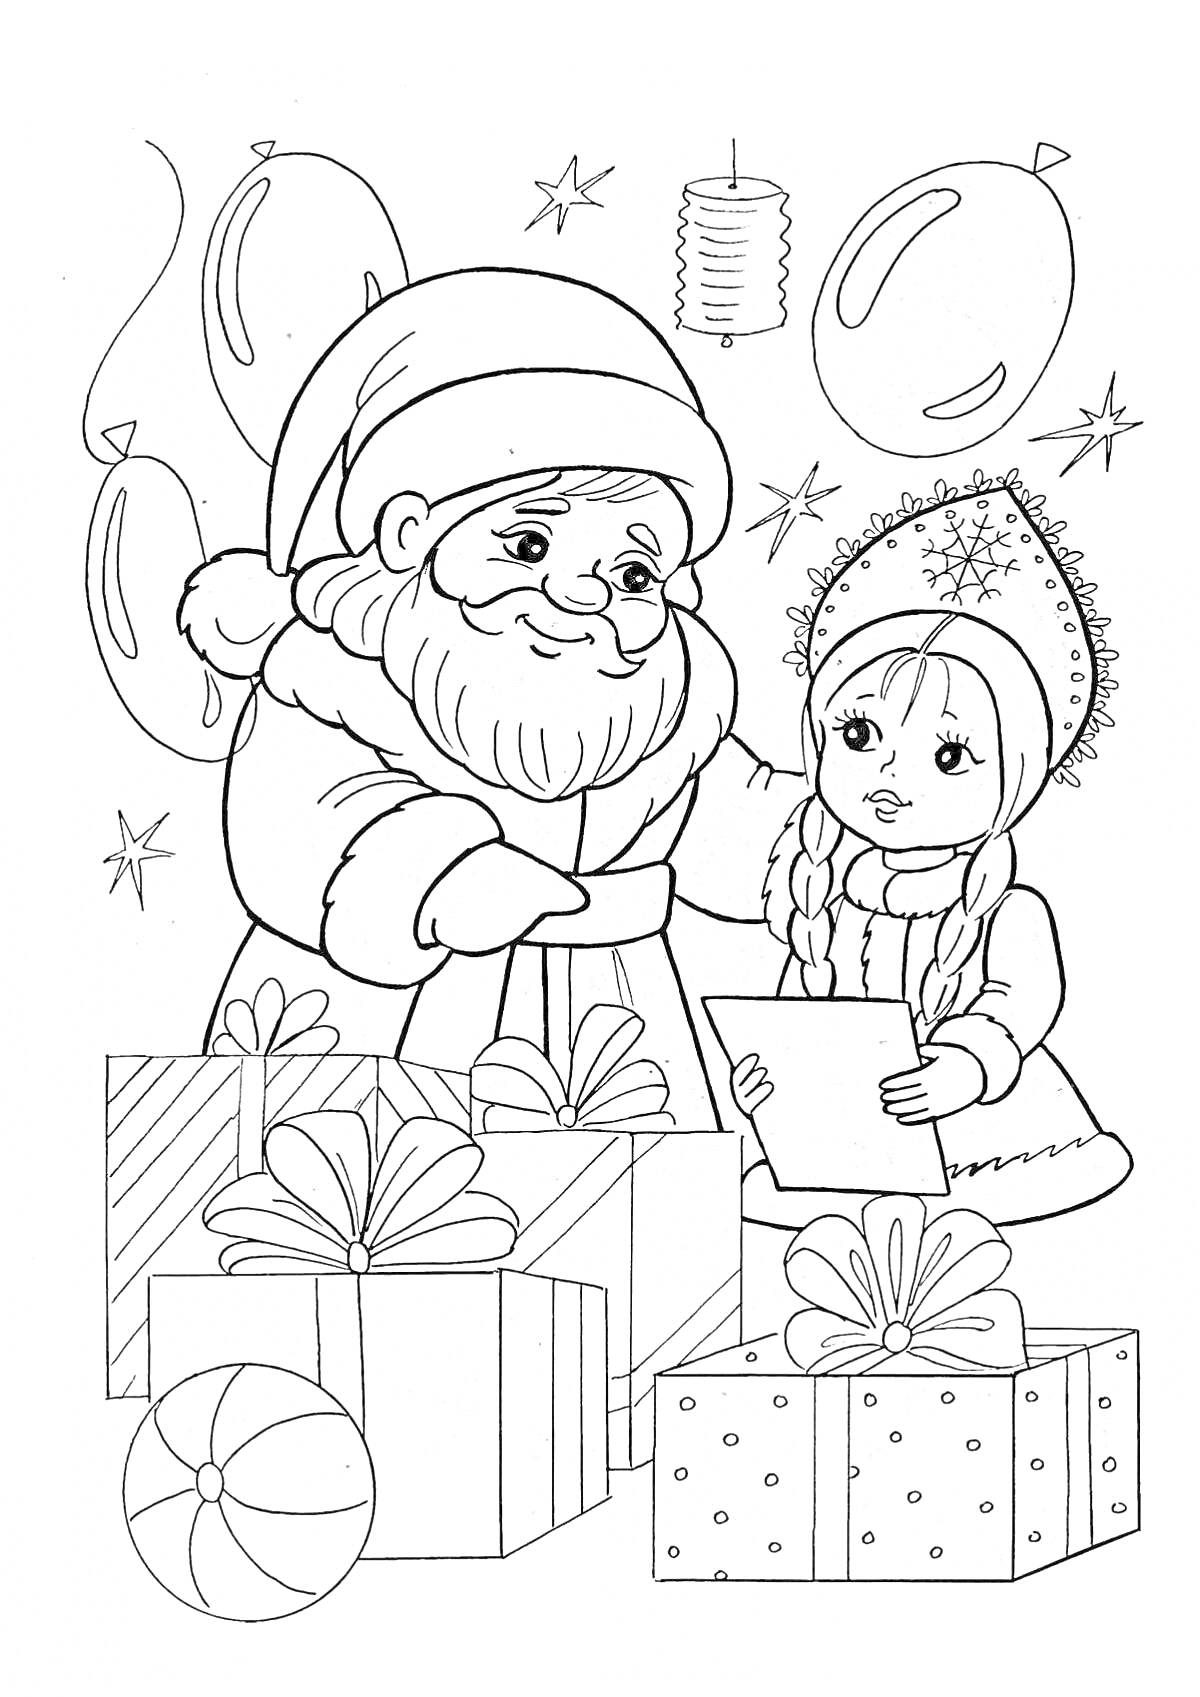 РаскраскаДед Мороз и Снегурочка с подарками и воздушными шарами